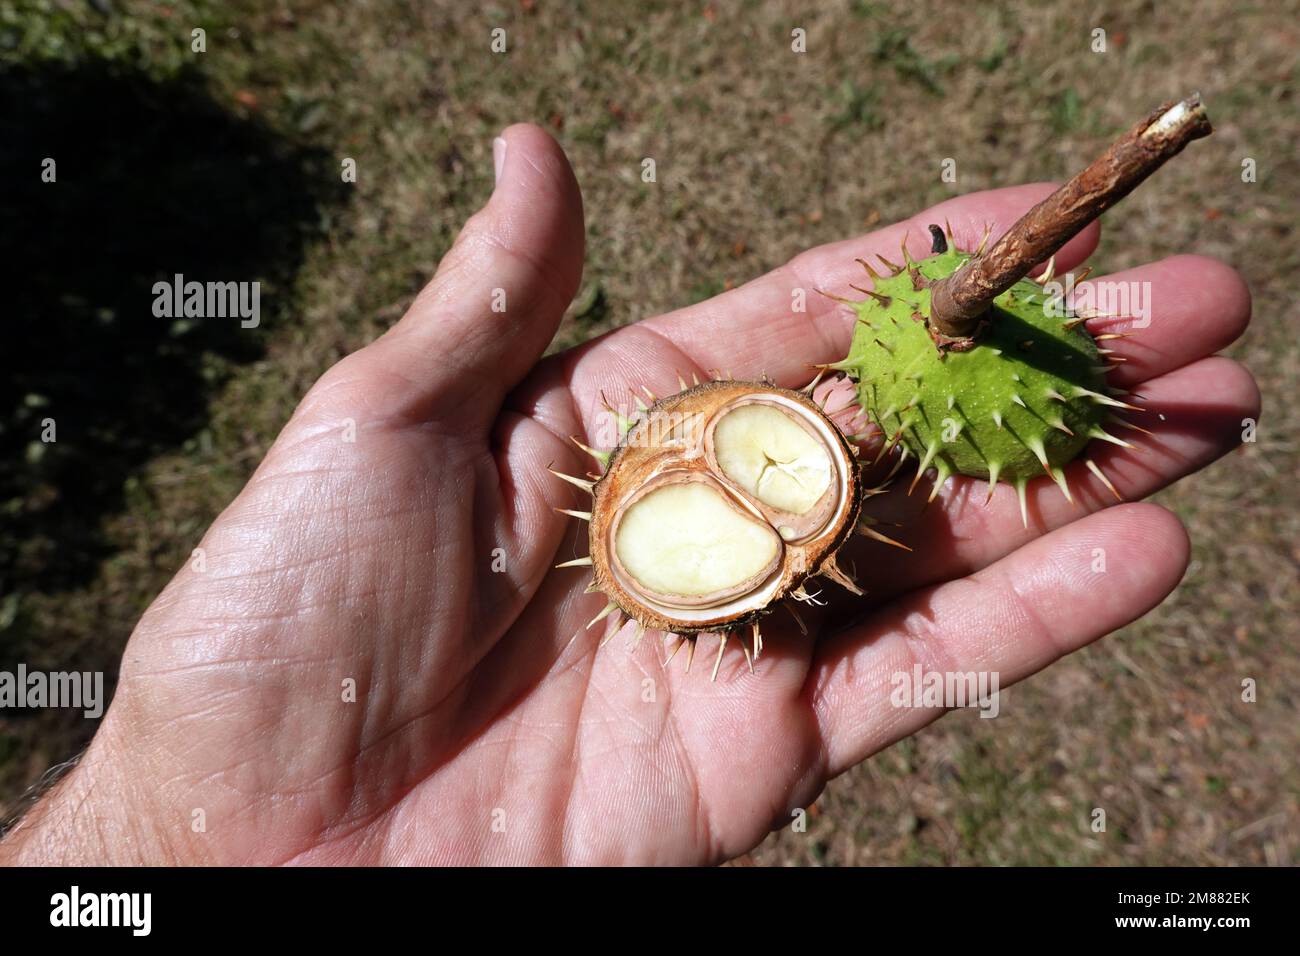 Kastanie (Aesculus hippocastanum) mit einer Zwillingsfrucht auf einer Handfläche Stockfoto